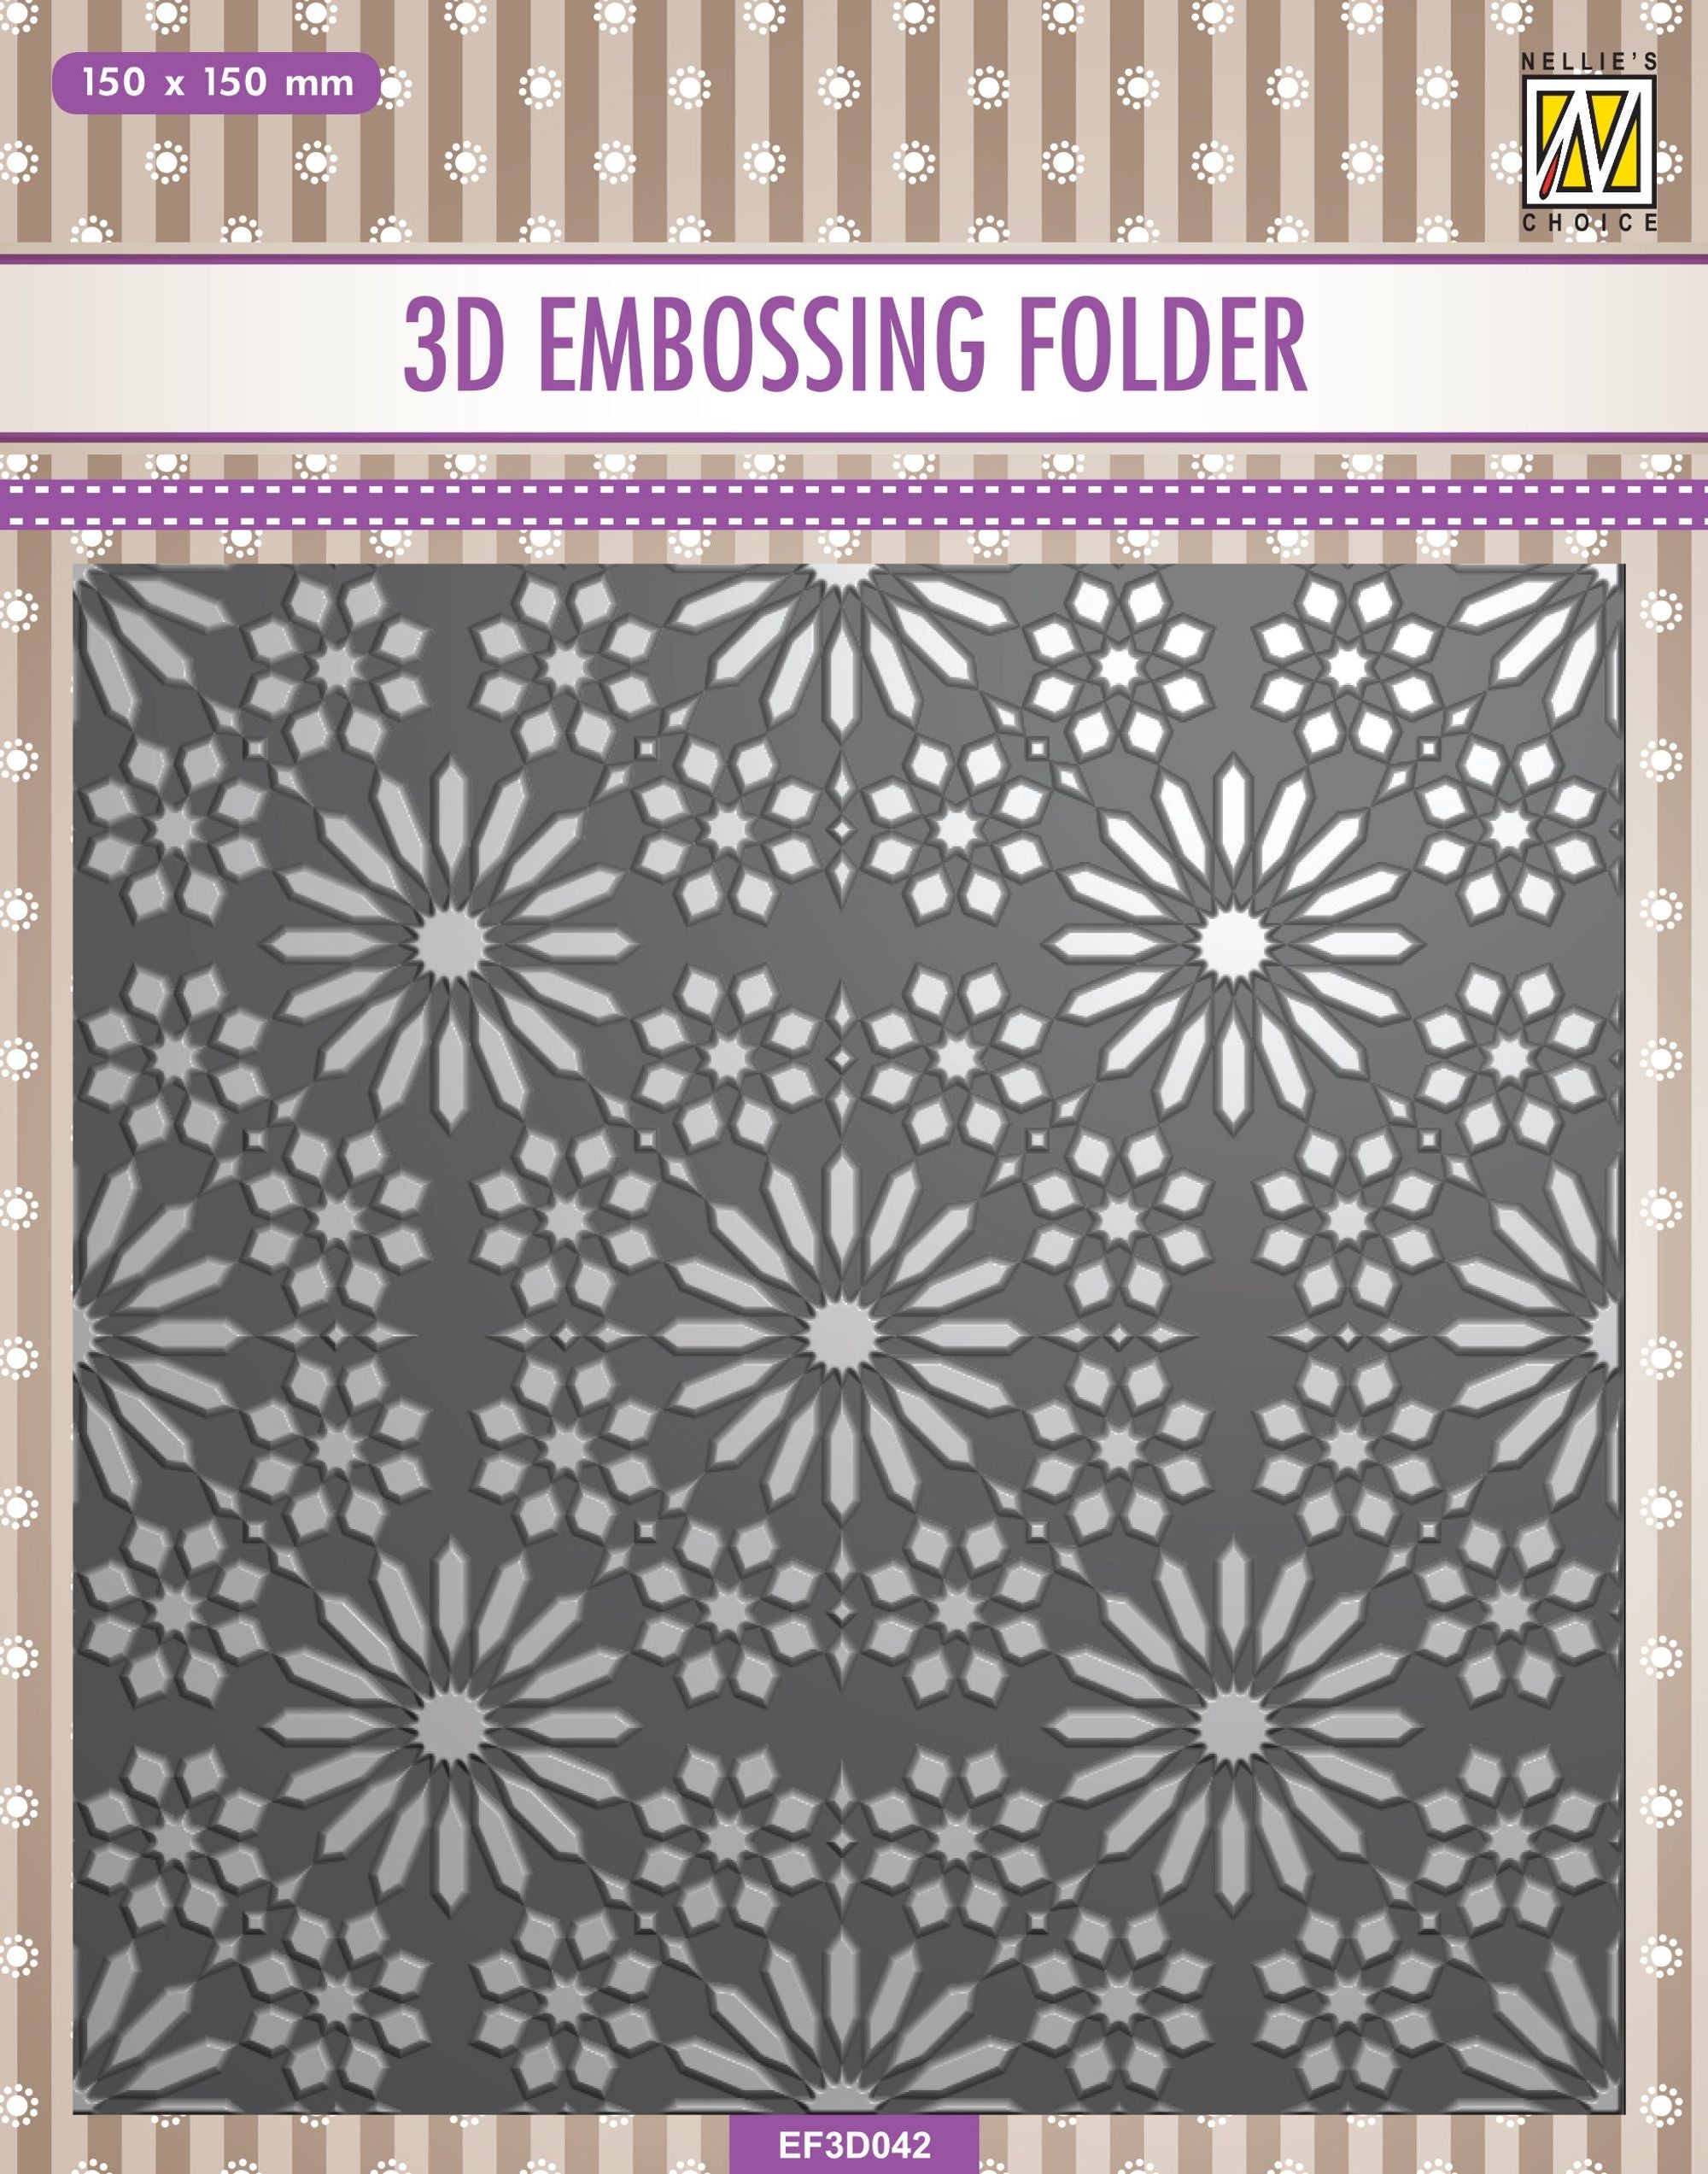 Nellie's Choice 3D Embossing Folder - Square Frame - Flower Pattern